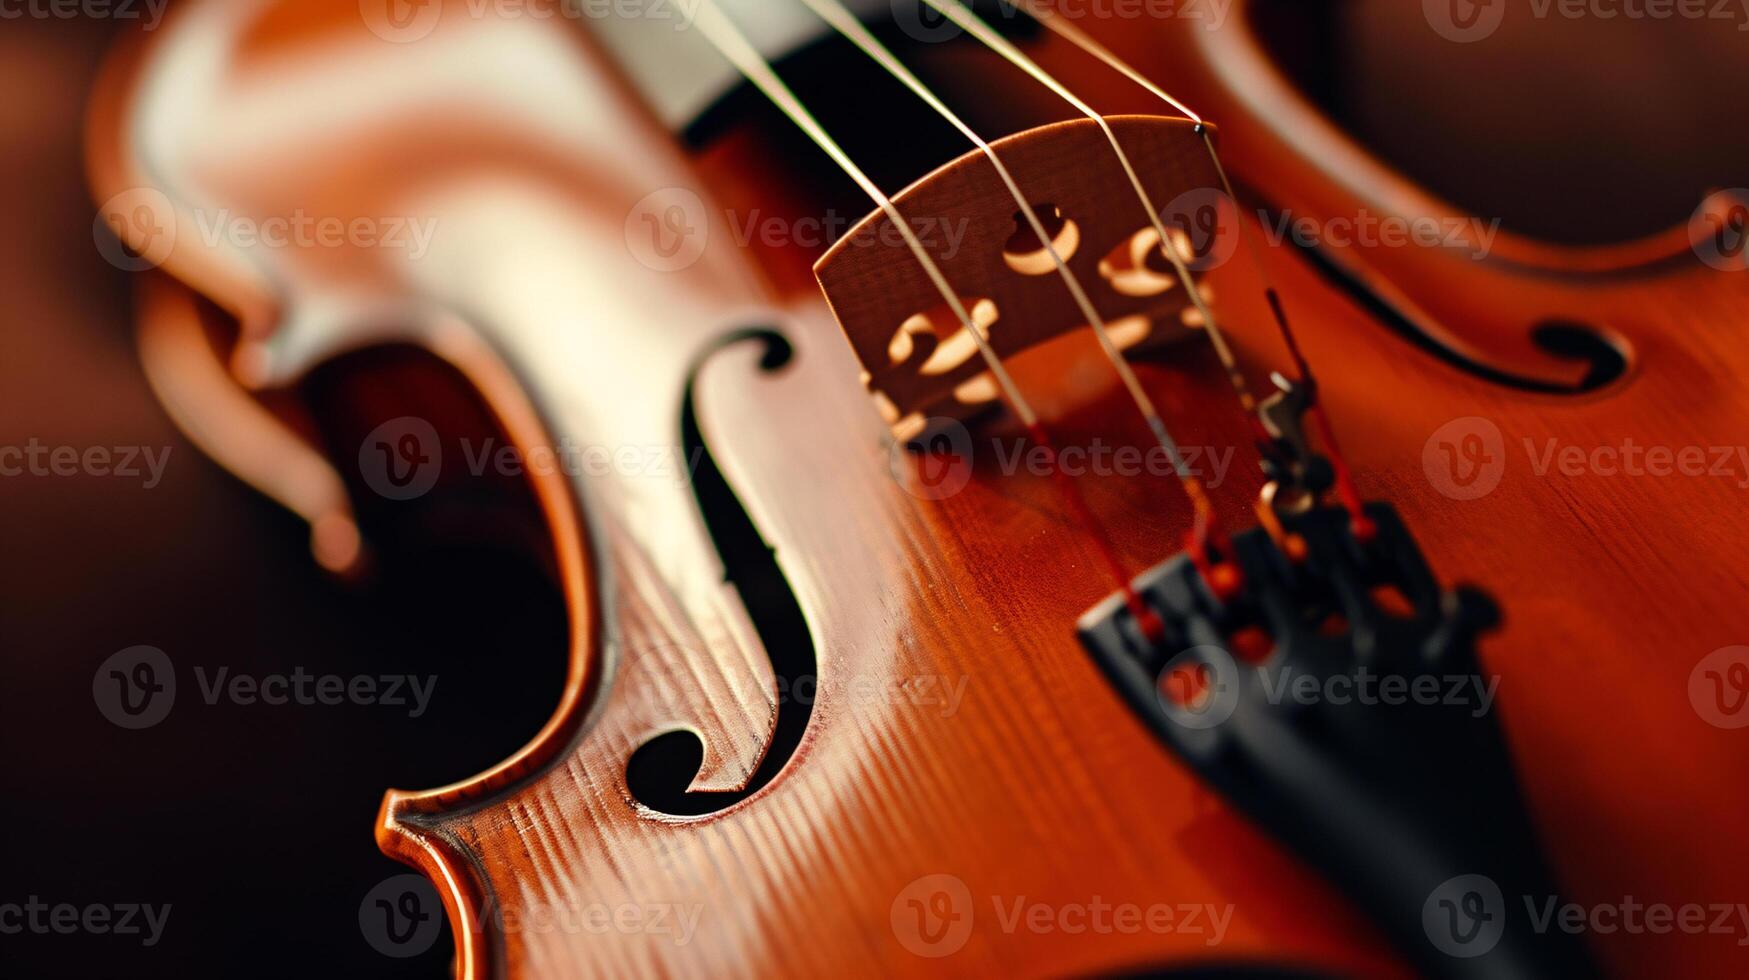 harmonie de musical instruments, se concentrer sur le élégant courbes de une violon photo